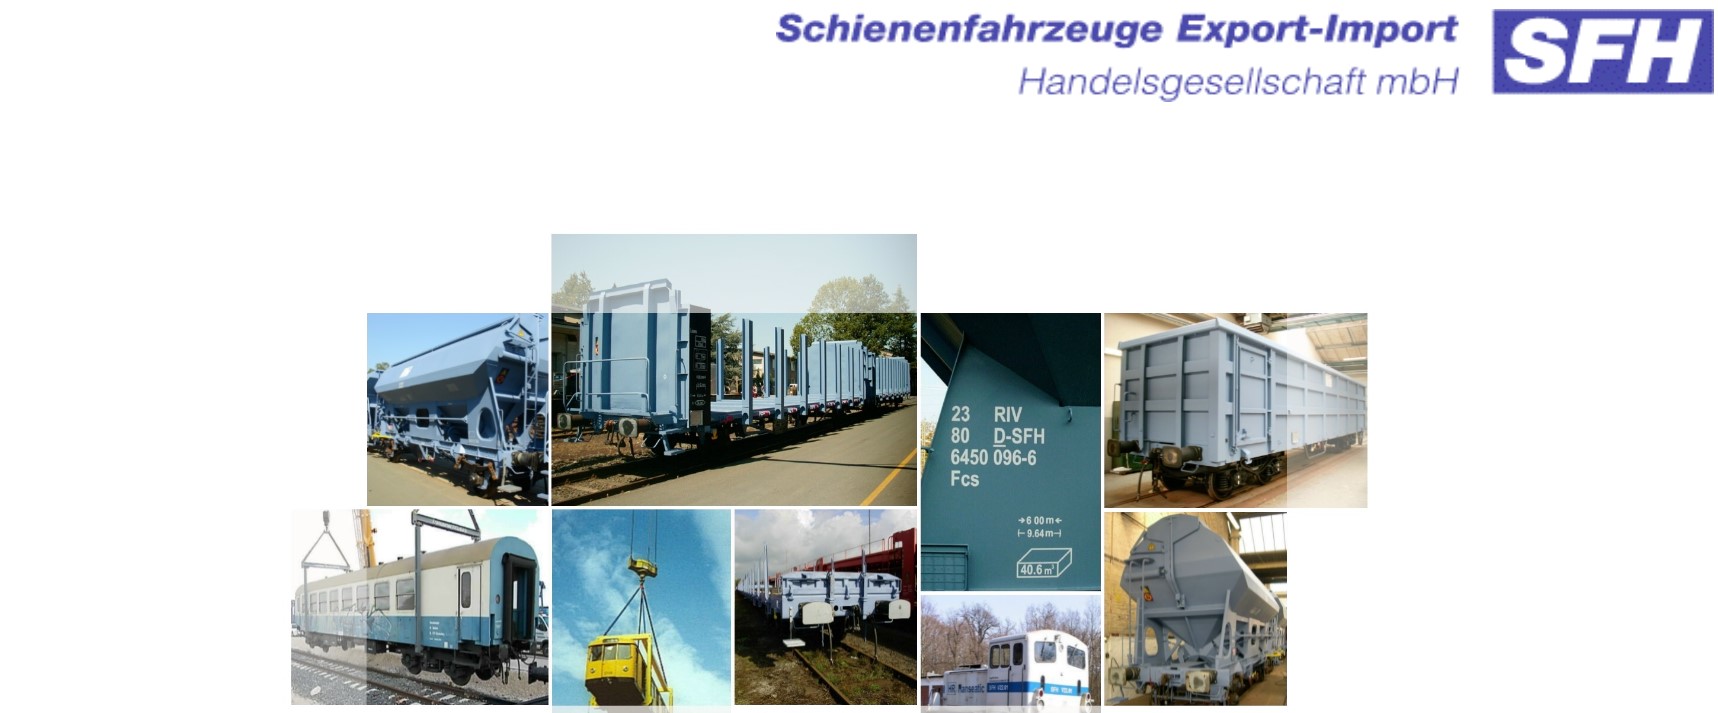 SFH Schienenfahrzeuge Export-Import Handelsgesellschaft mbH – Berlin 10405